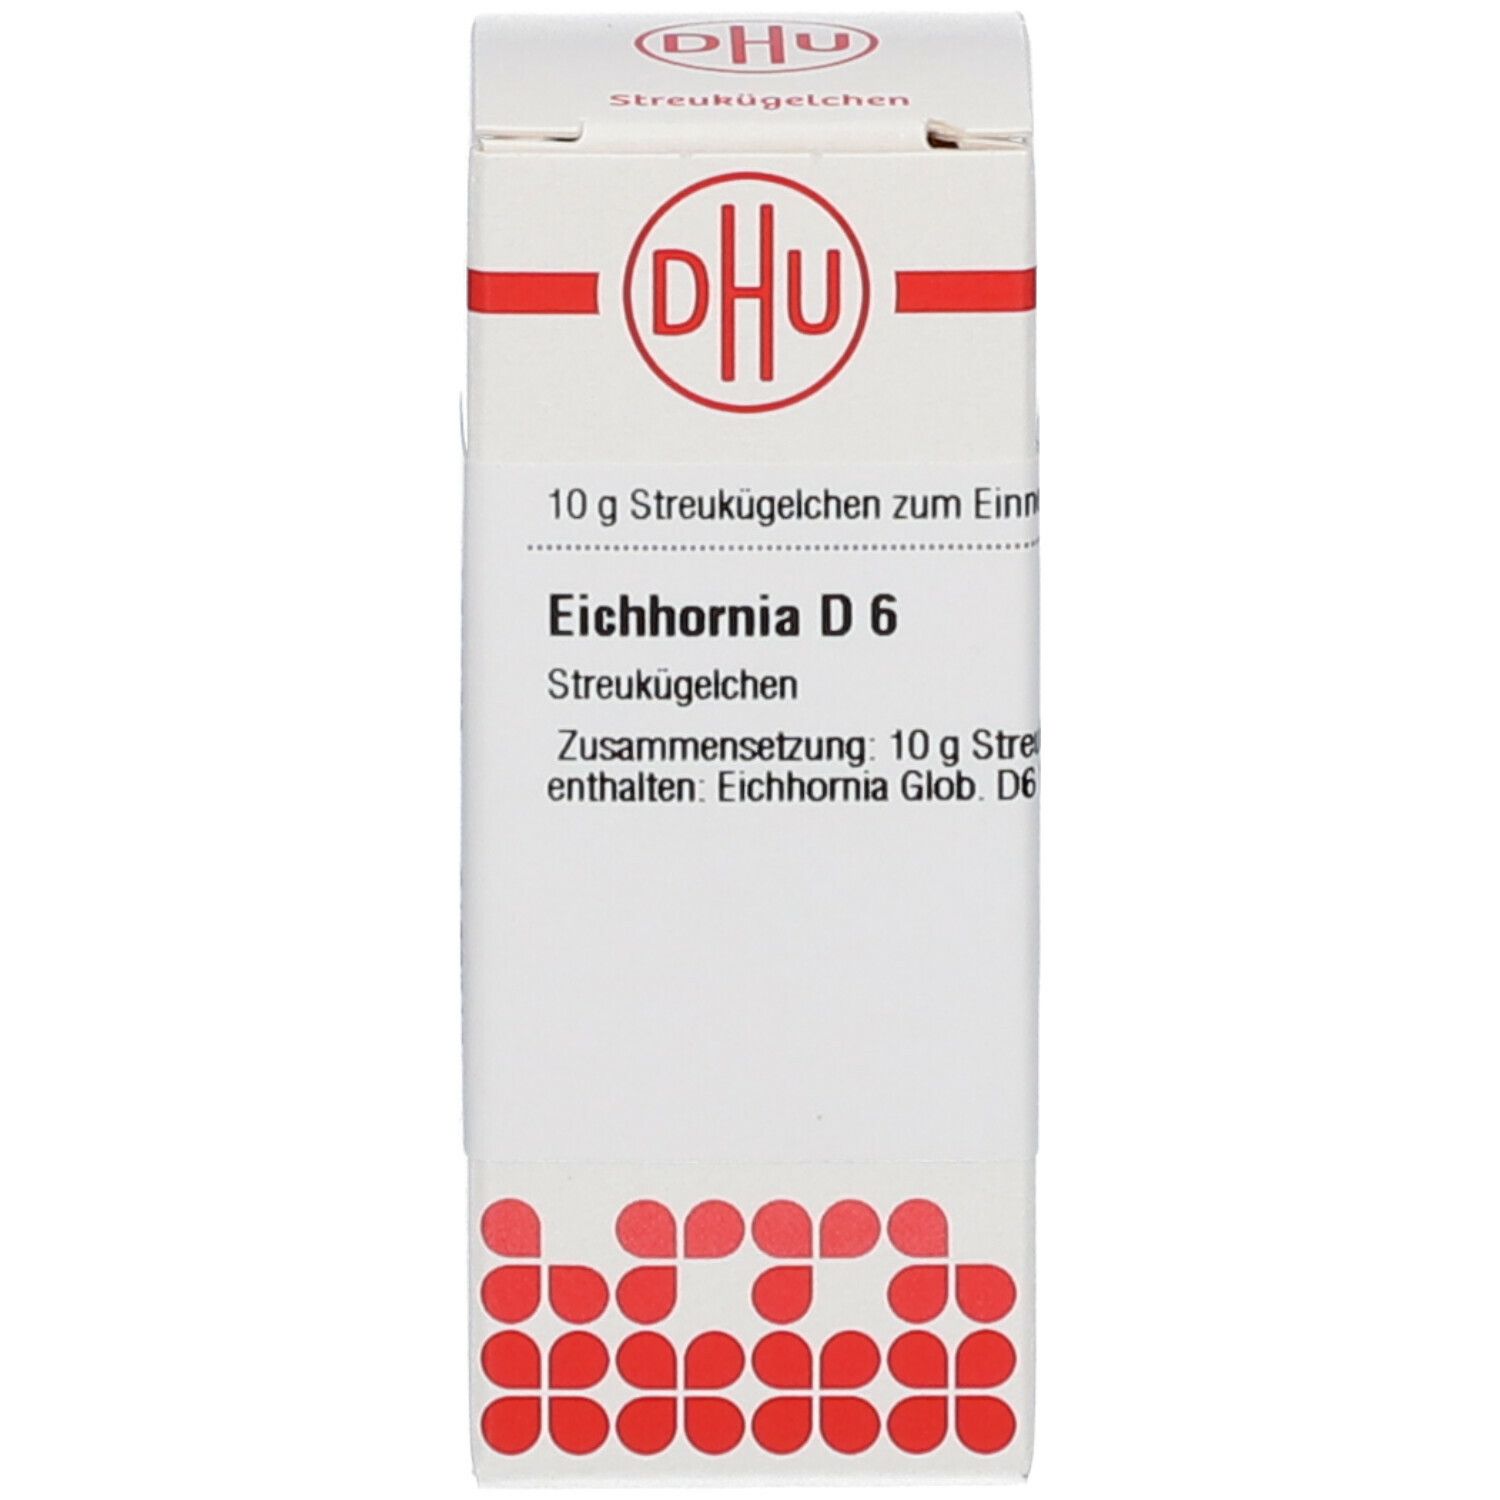 DHU Eichhornia D6